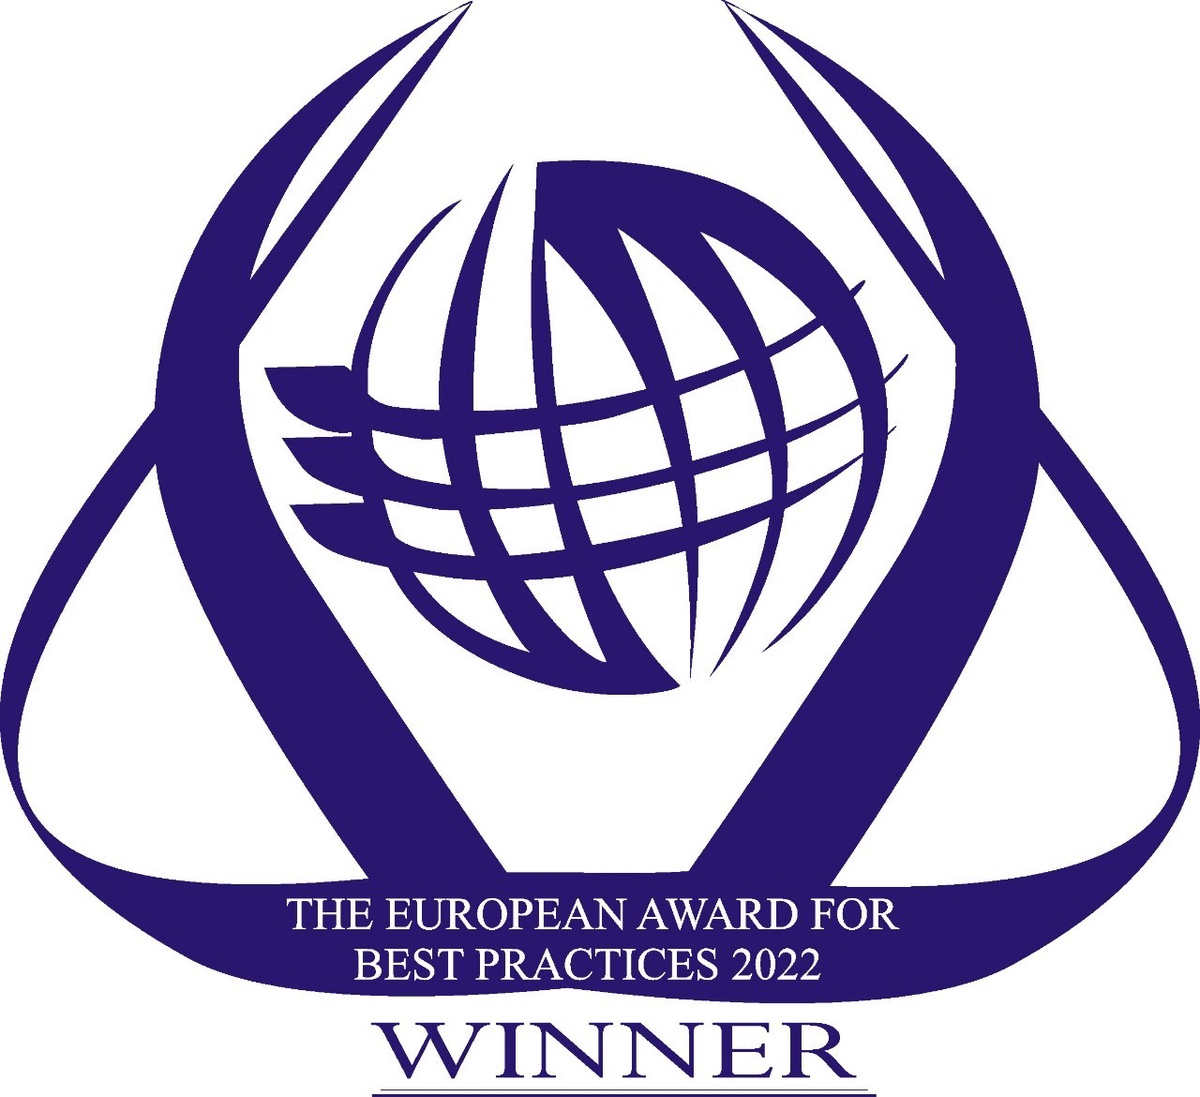 สหพัฒน์ คว้ารางวัลอันทรงเกียรติเวทีระดับโลก The European Award for Best Practices 2022 จาก ESQR